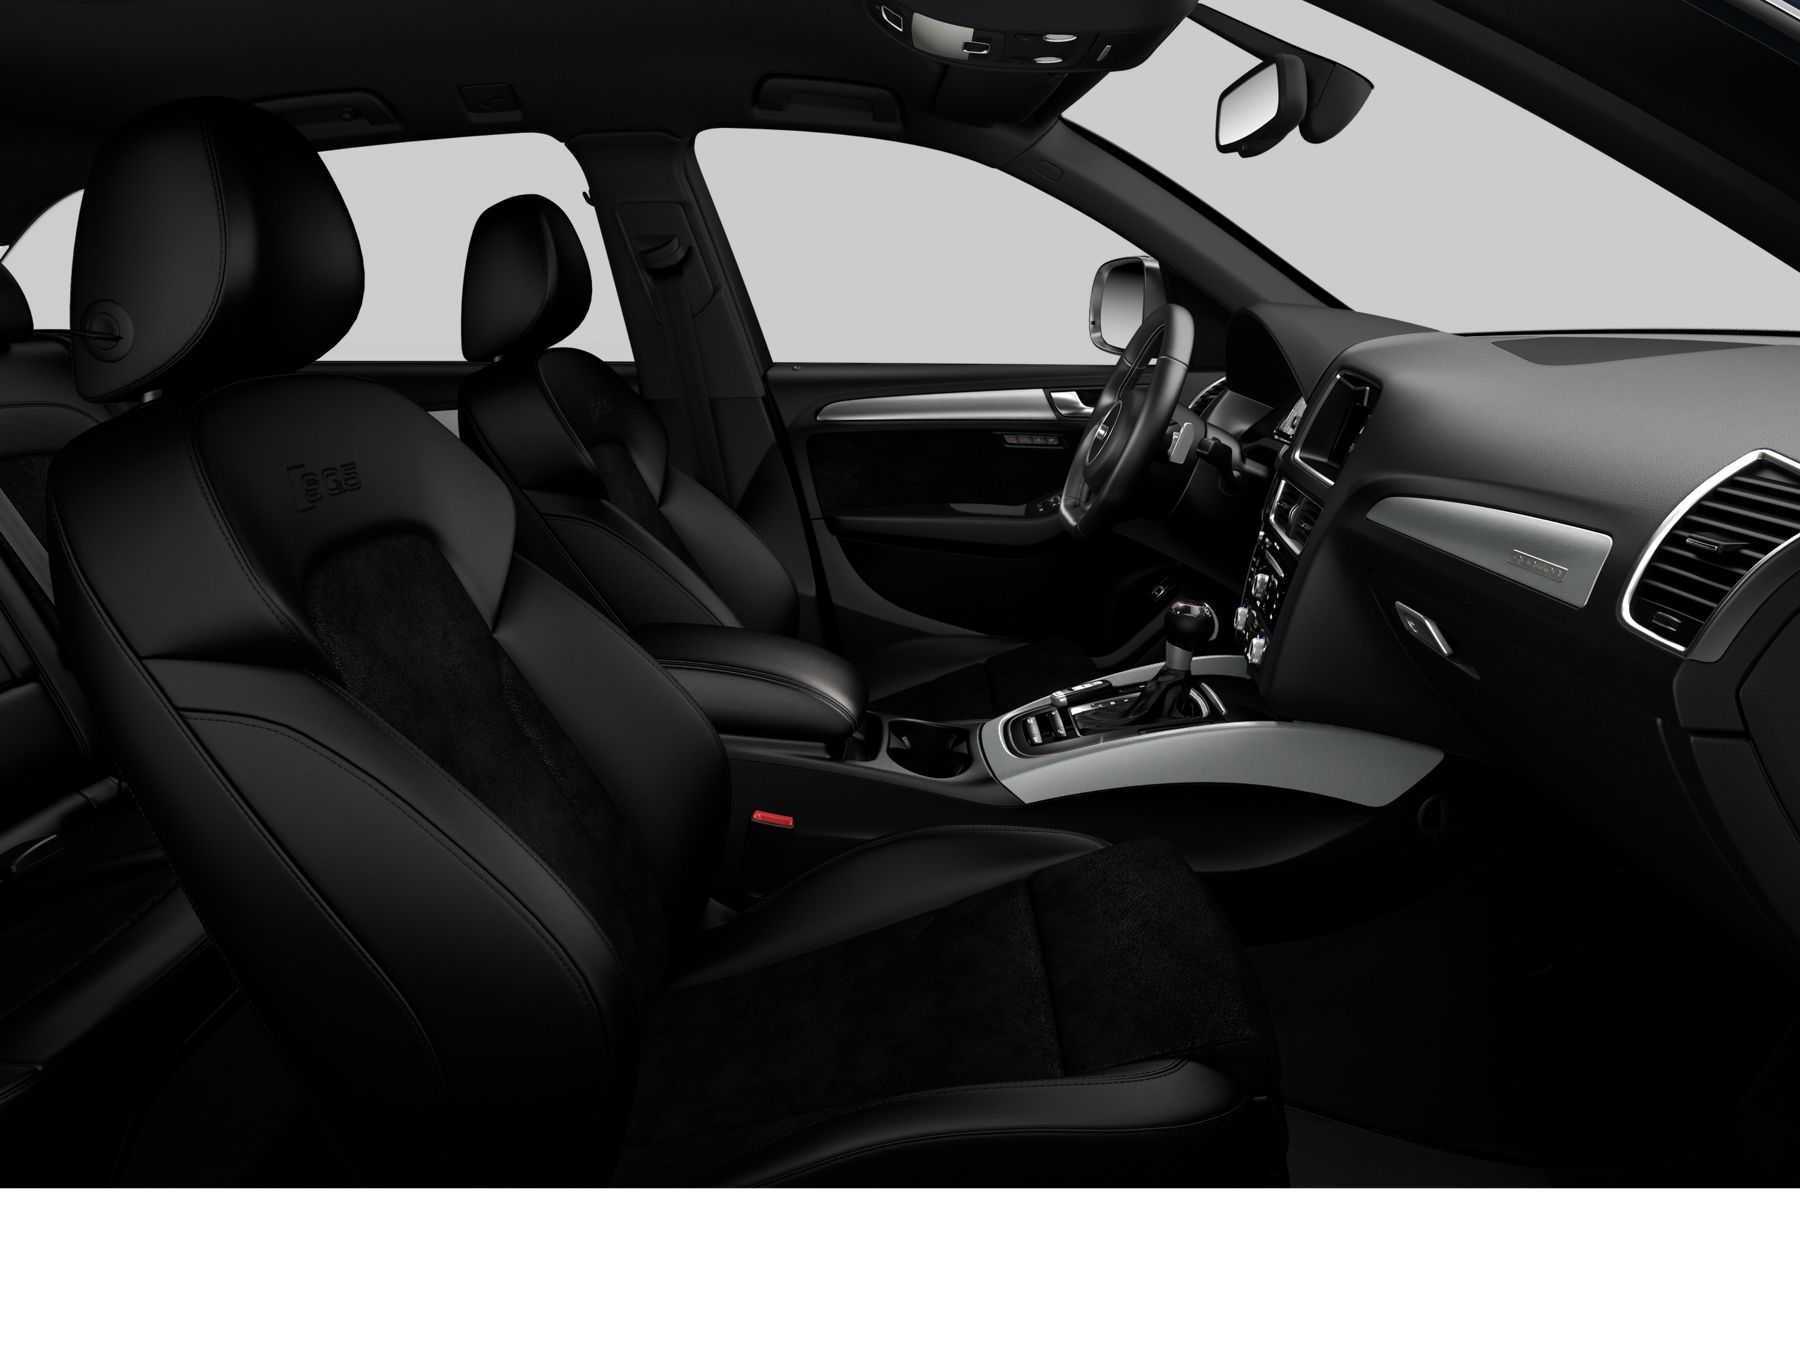 Audi SQ5 Prestige interior side view